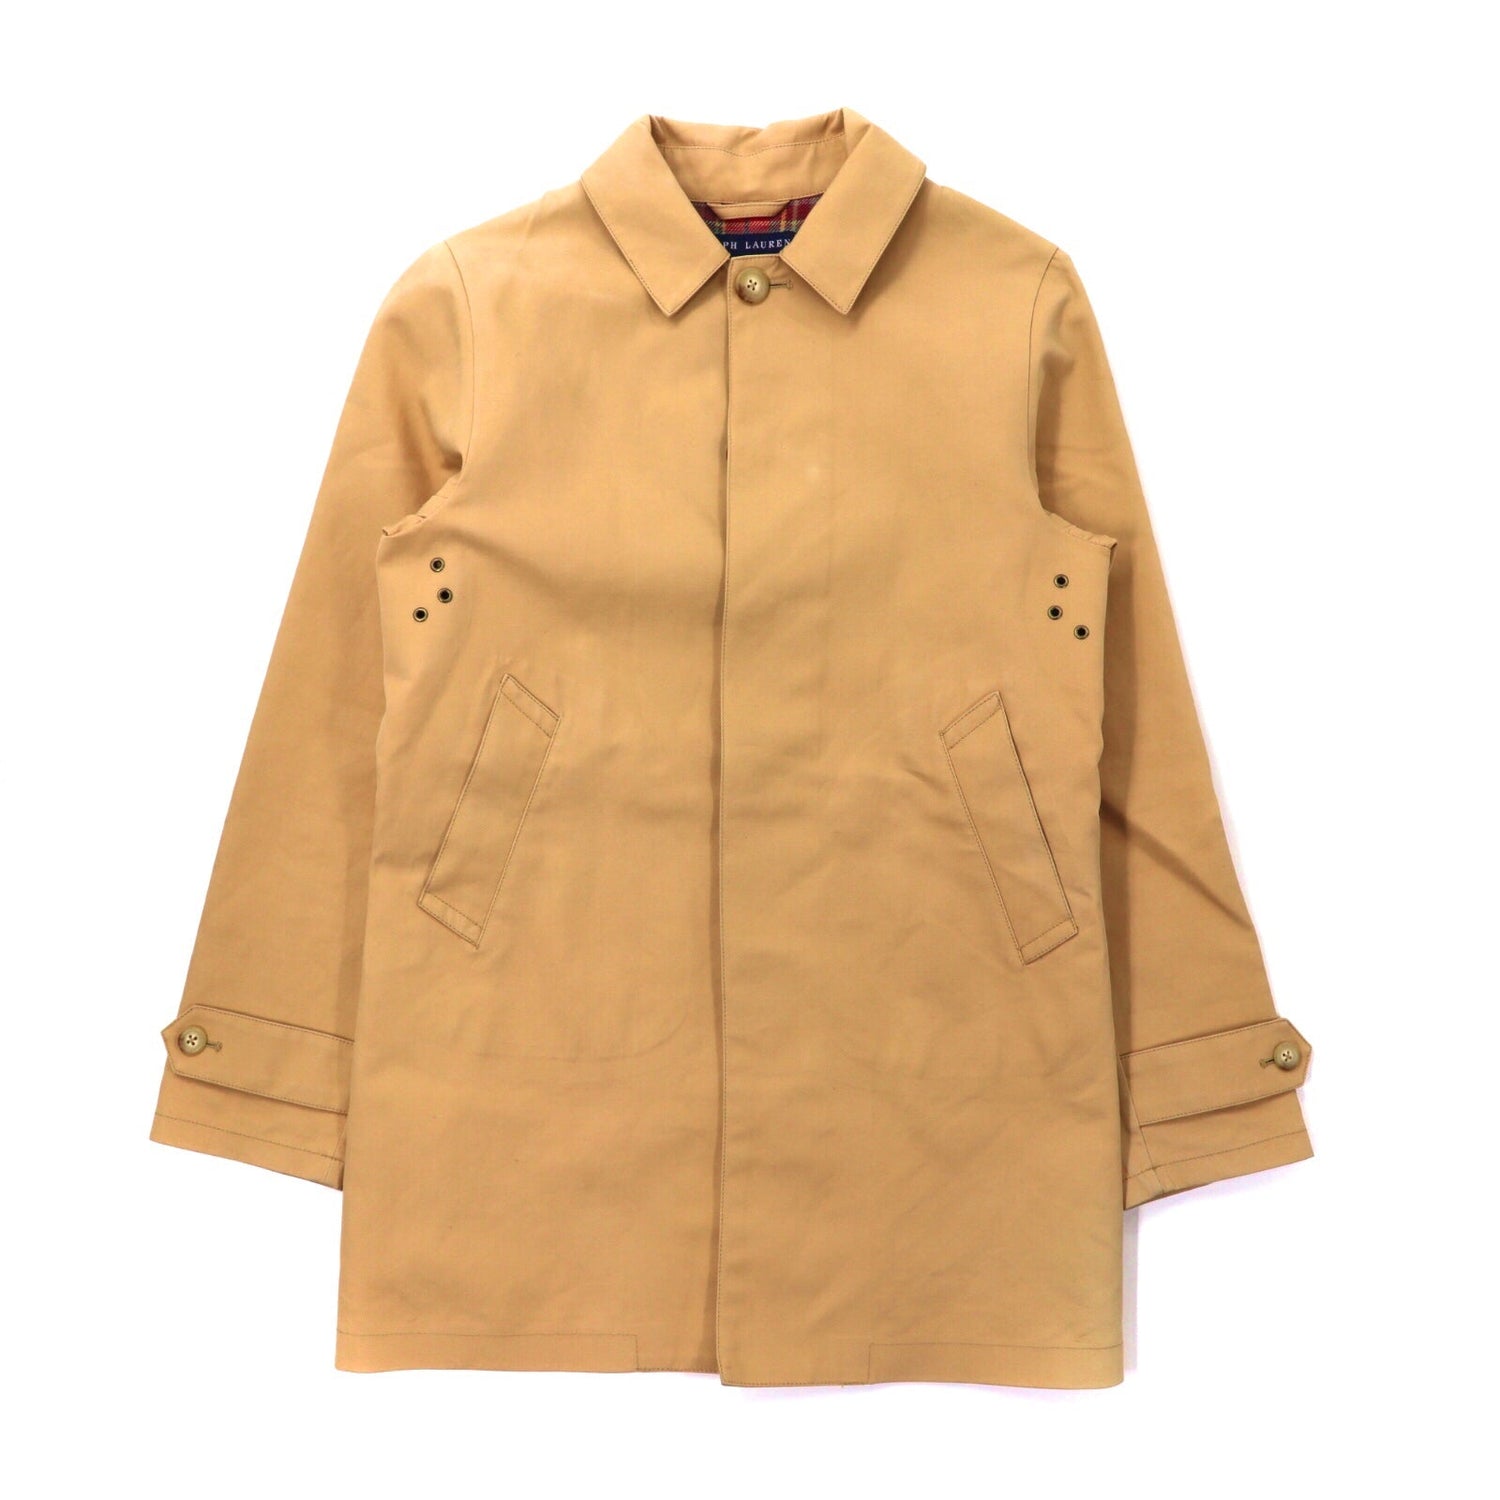 Ralph Lauren Rubbertring coat 7 Beige Cotton Liner Checked